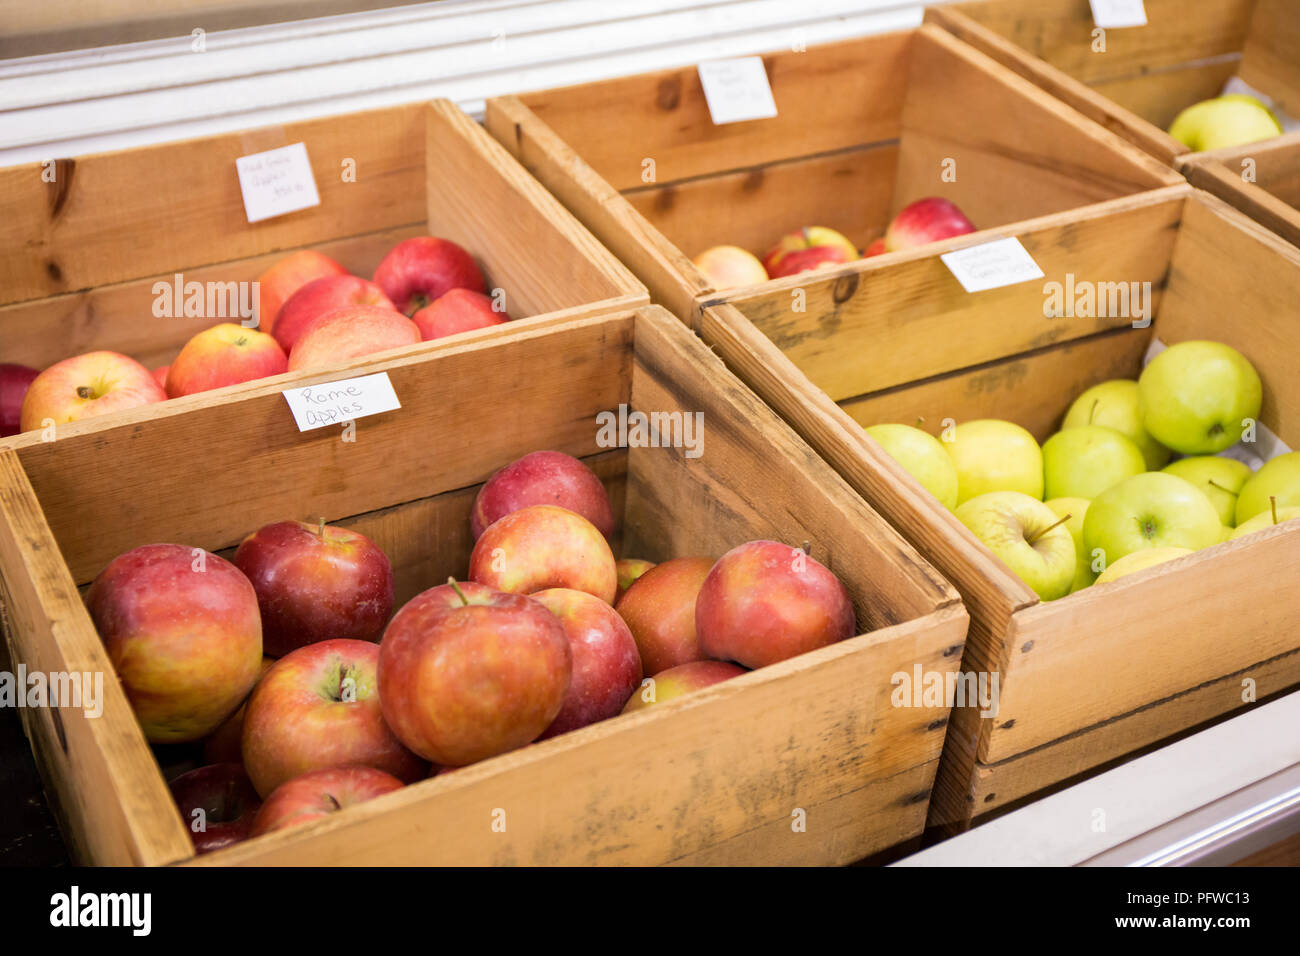 Hood River, Oregon, USA. Rome, Rouge Gala, Golden Delicious et d'autres pommes à vendre à un stand de fruits. Banque D'Images